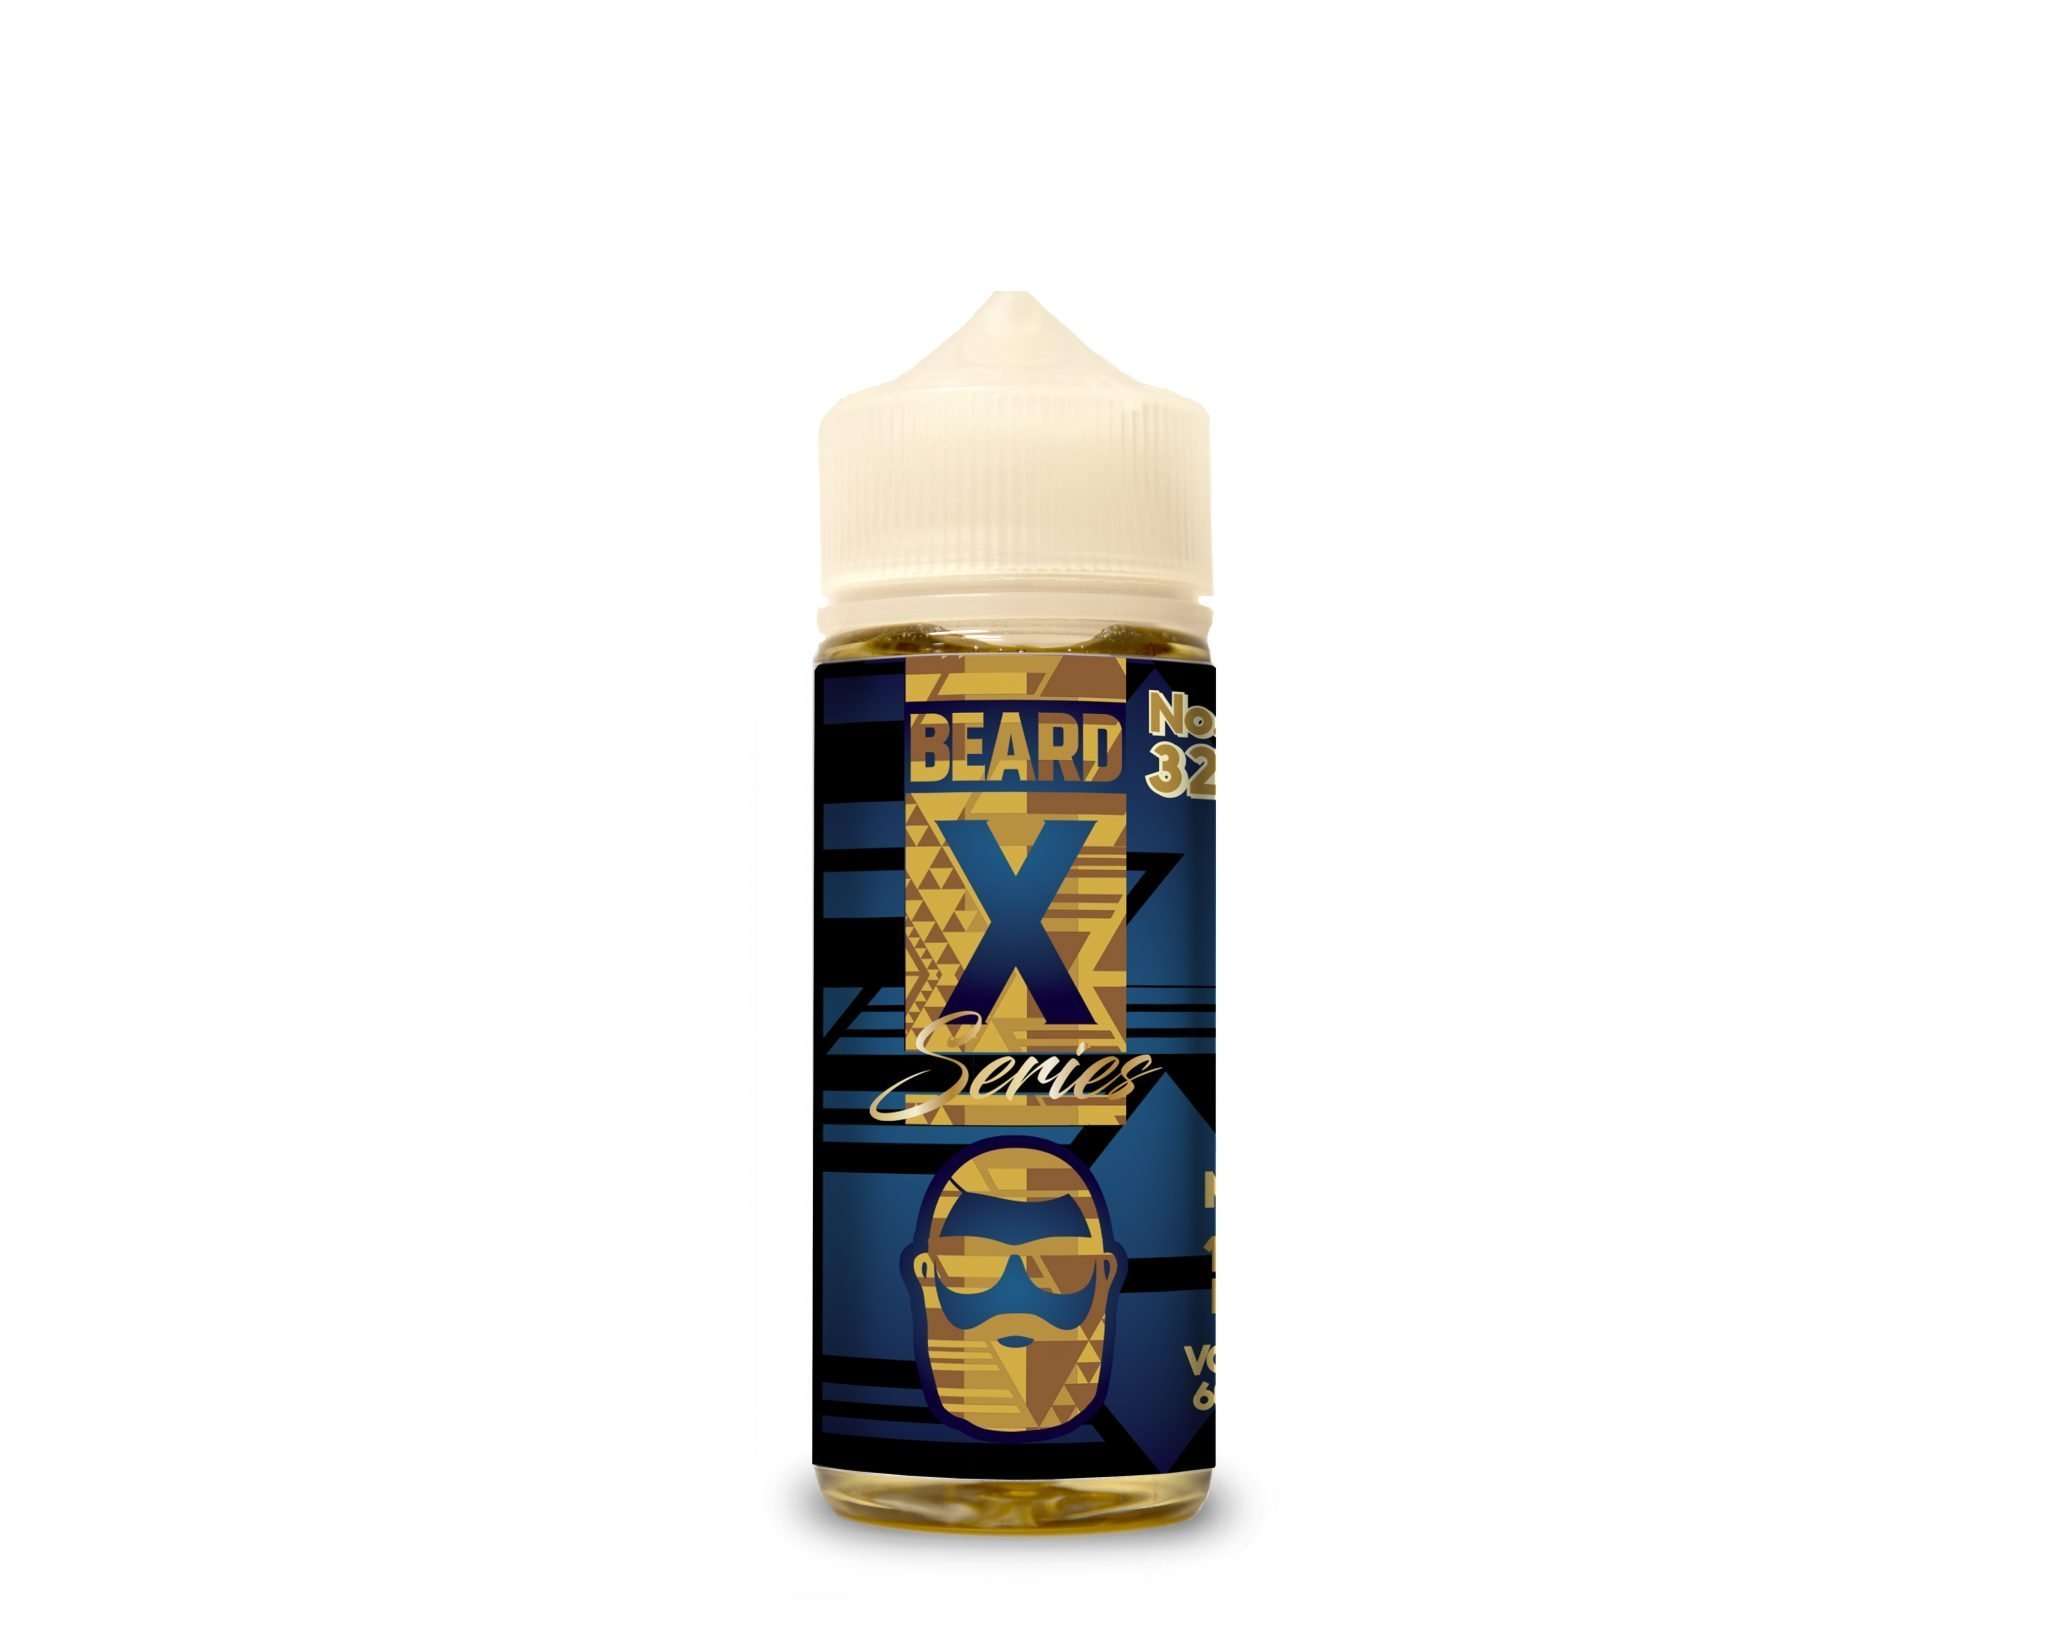 Beard X Series E Liquid - No. 32 - 100ml